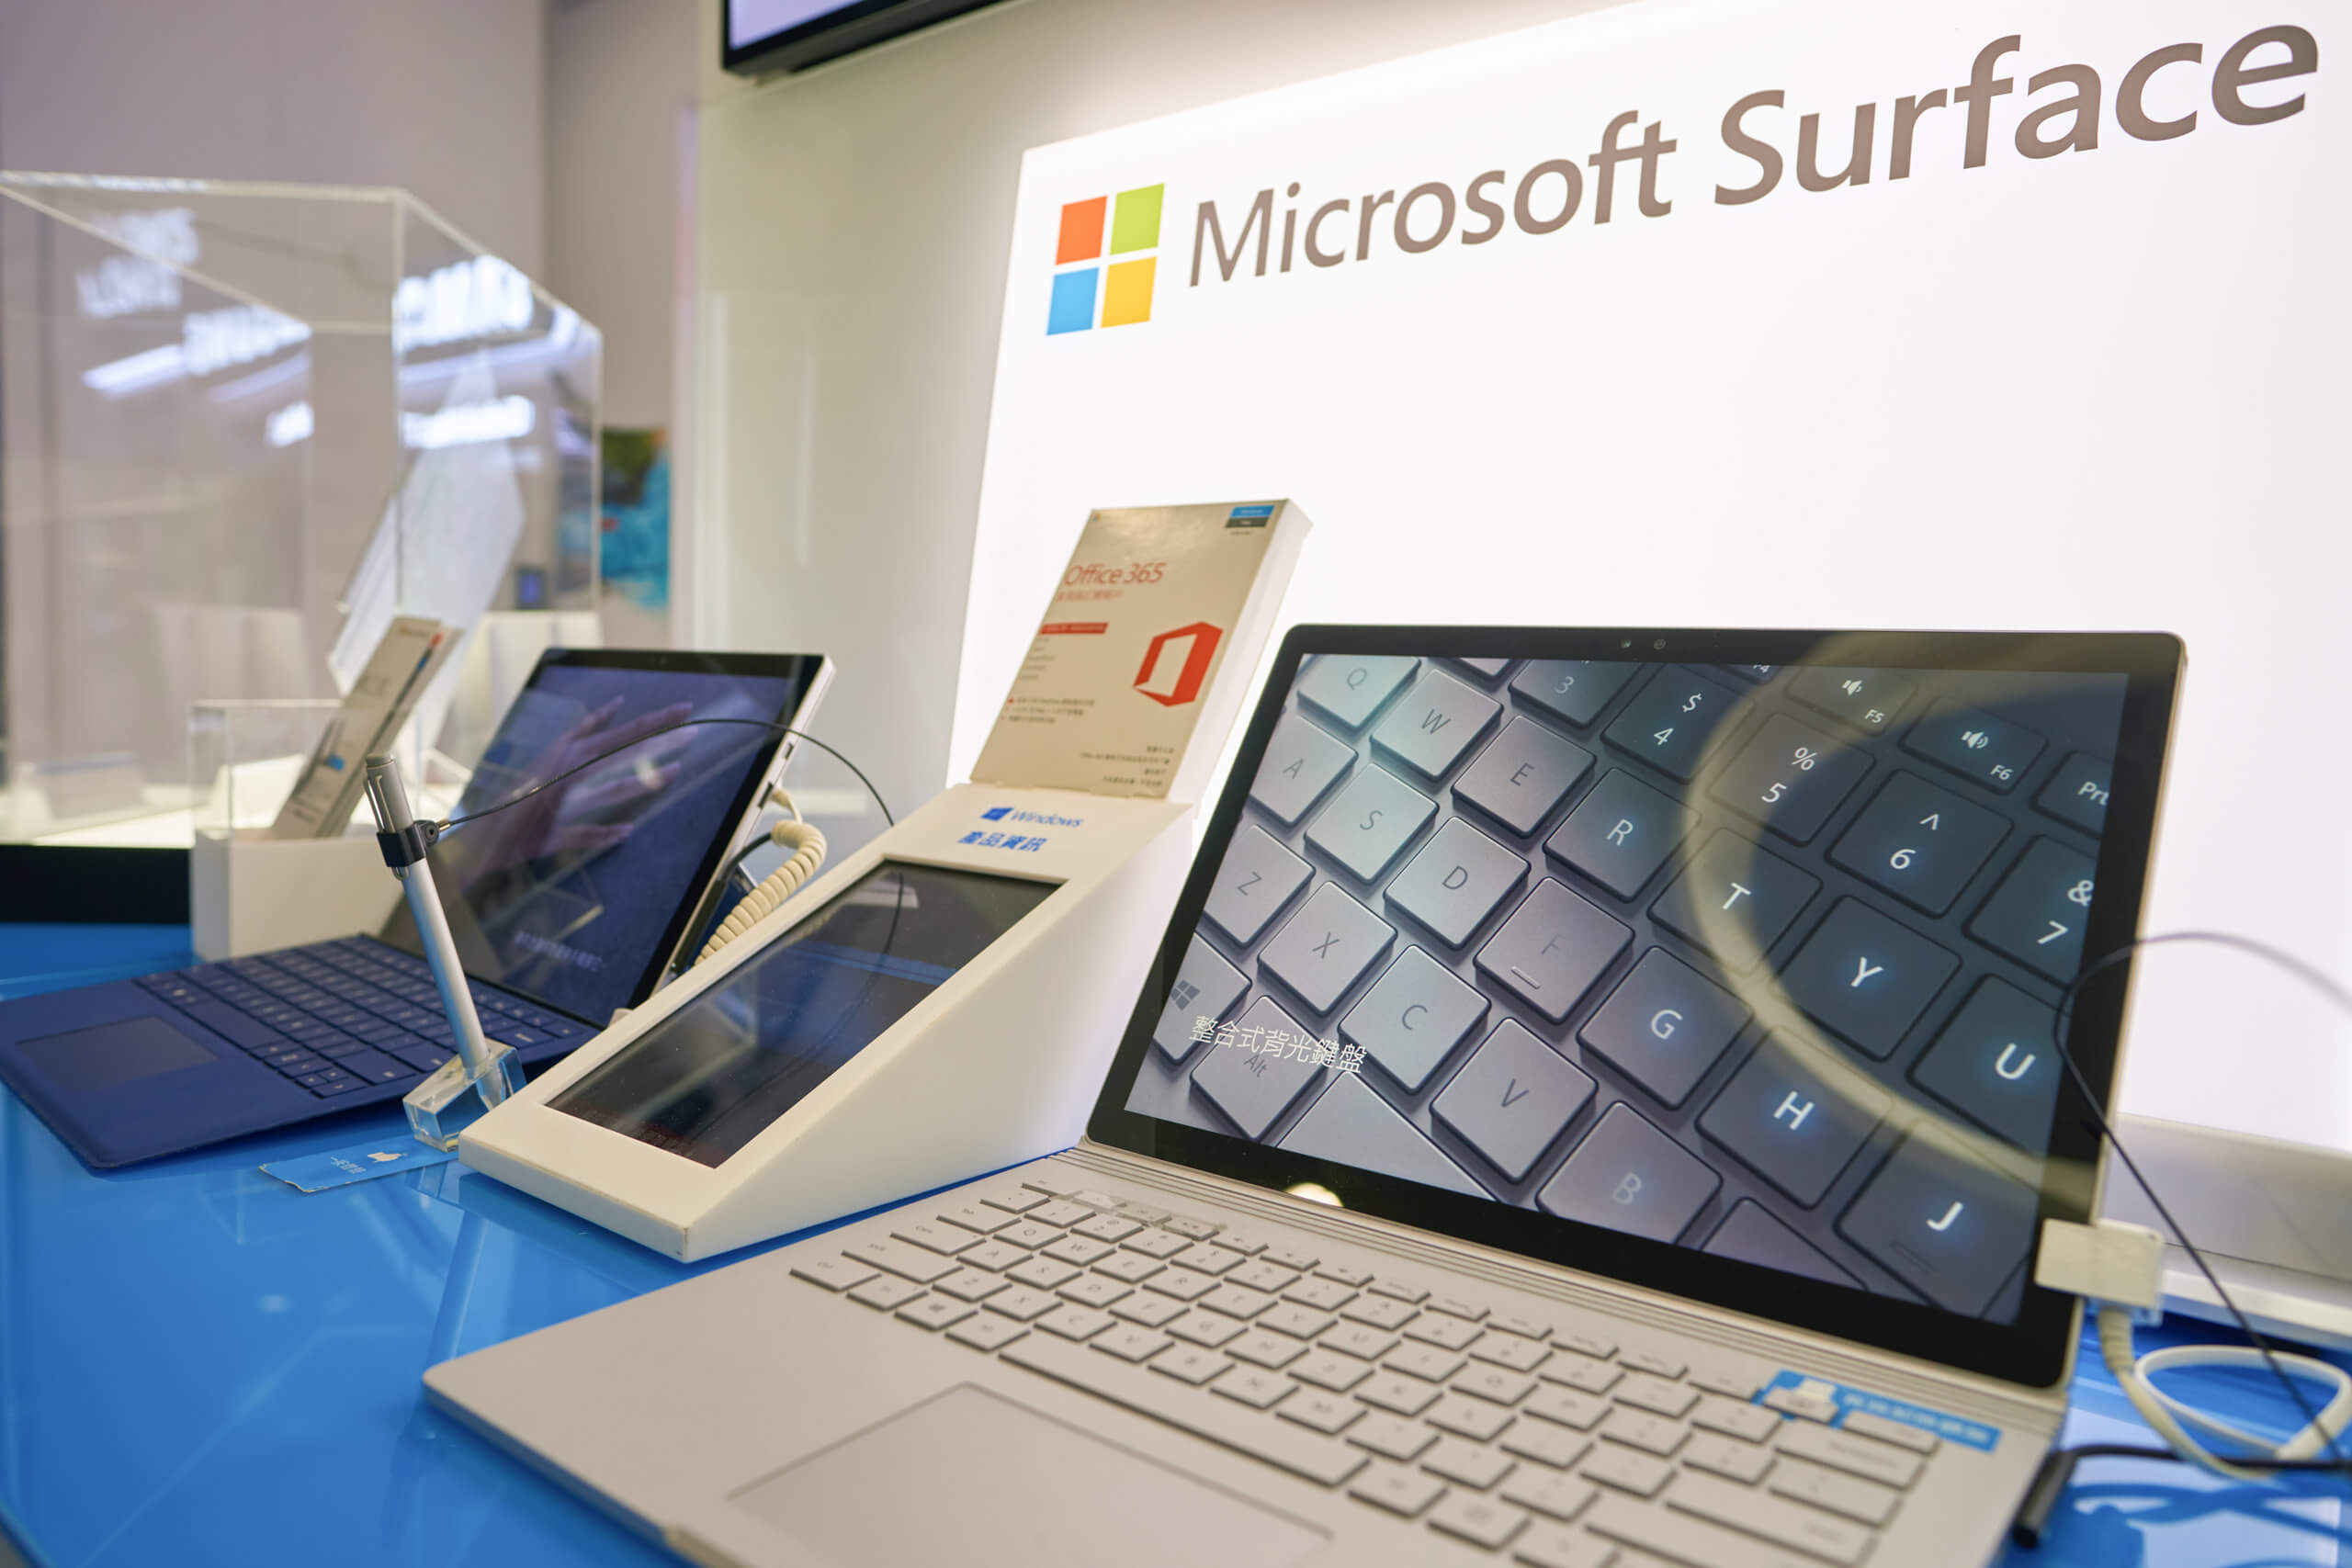 Zwei unterschiedliche Laptops der Marke Microsoft Surface